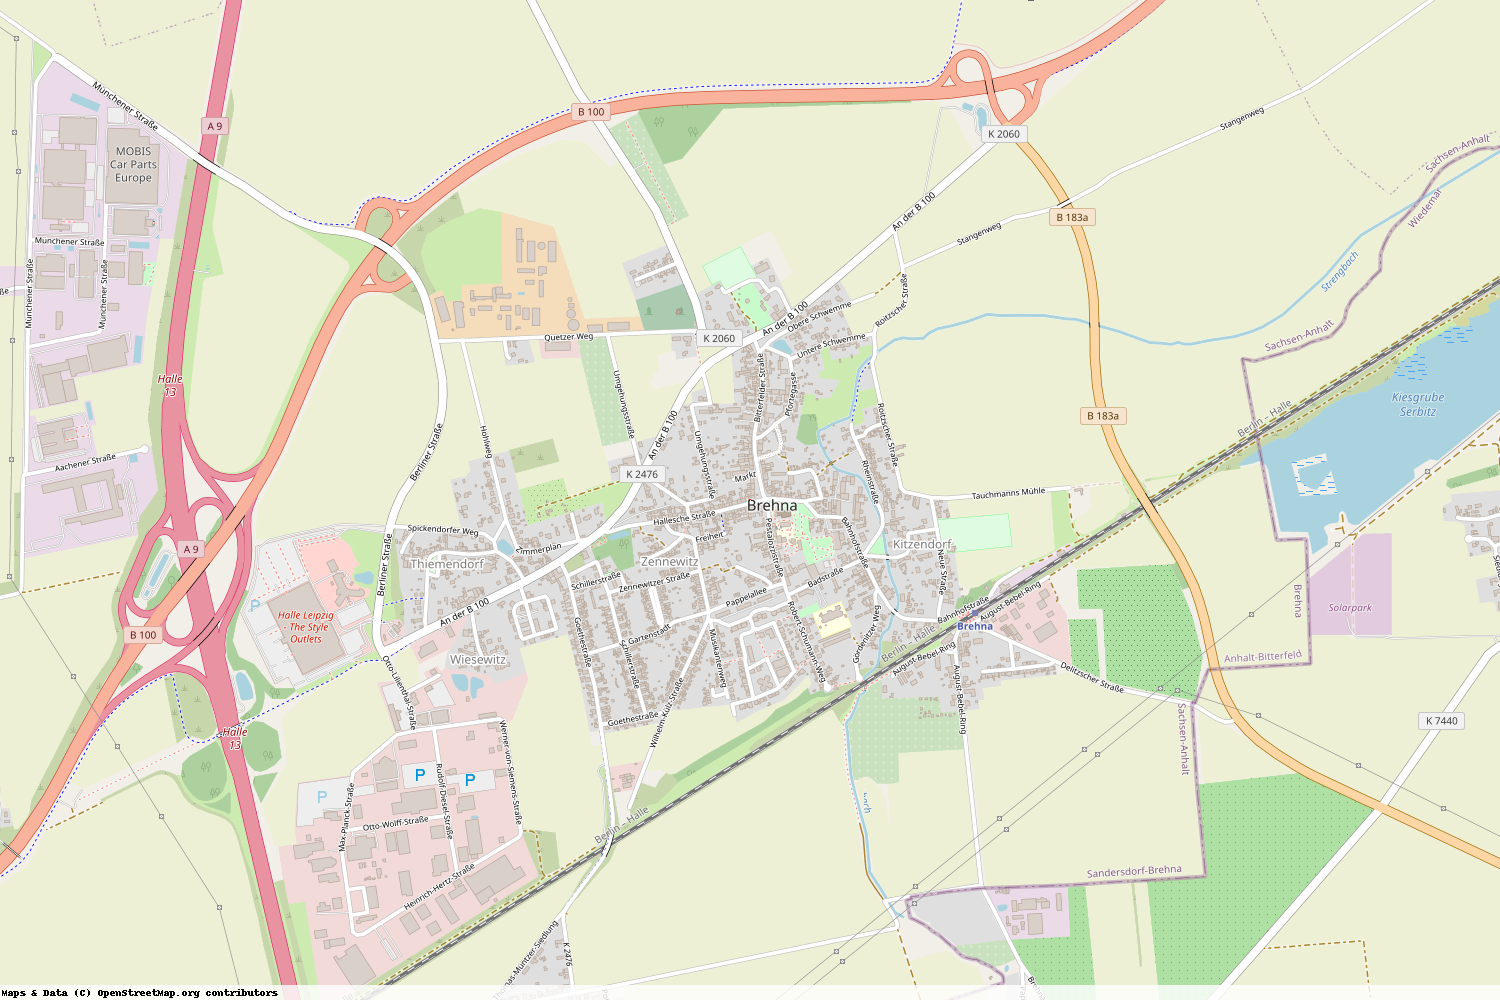 Ist gerade Stromausfall in Sachsen-Anhalt - Anhalt-Bitterfeld - Sandersdorf-Brehna?